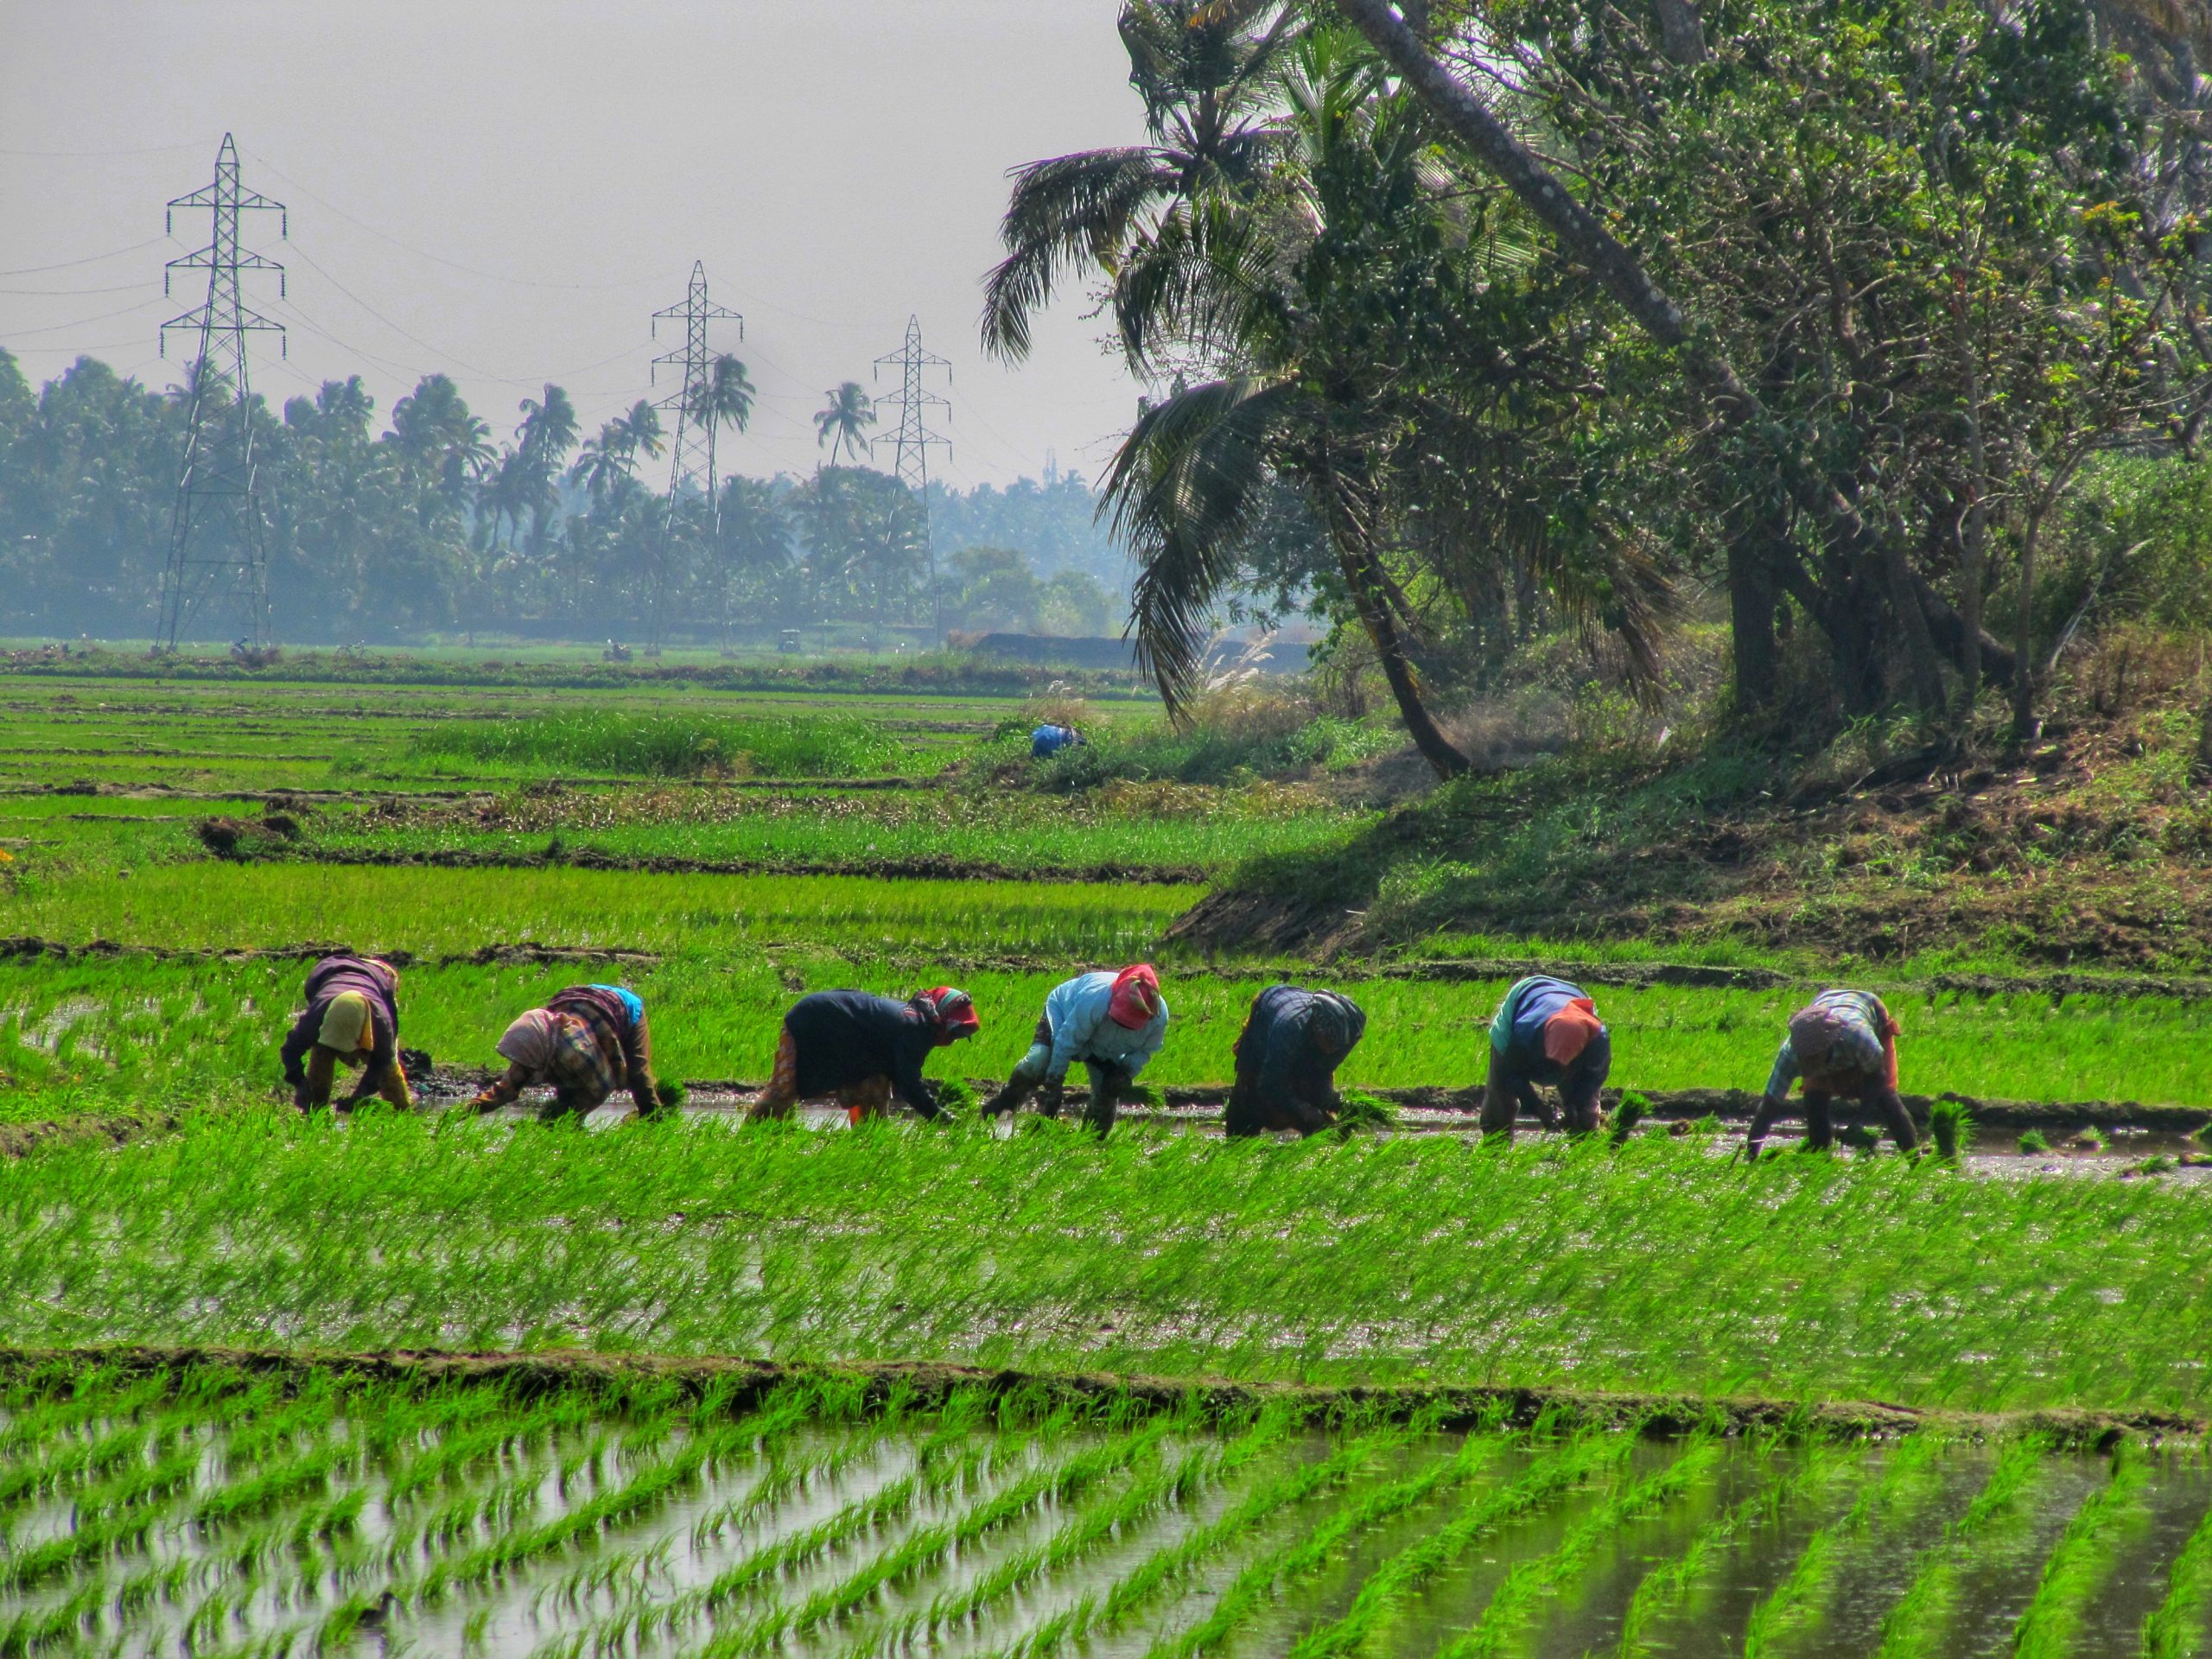 farmers working in the field